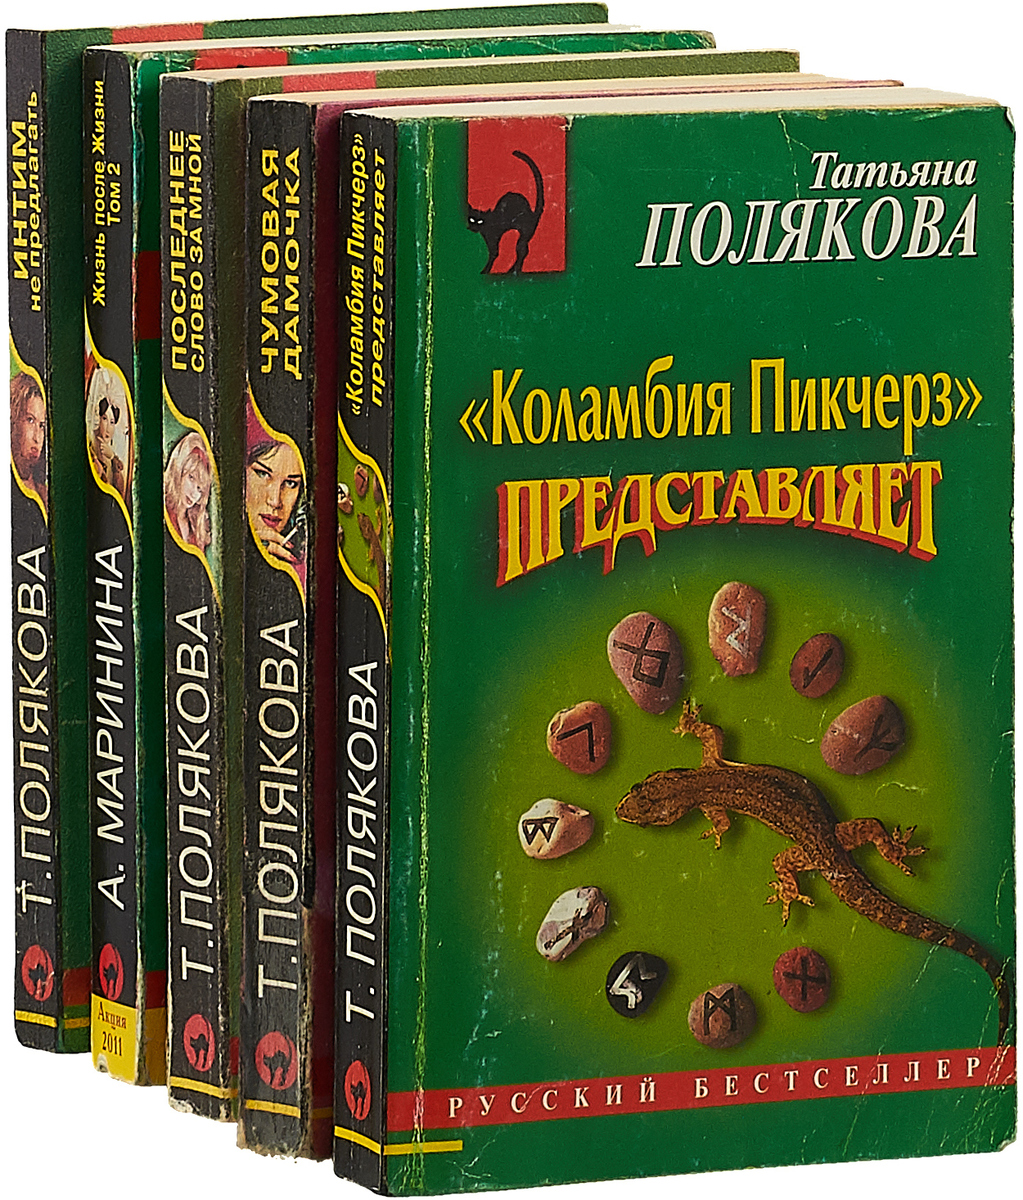 Книги бестселлеры. Первые книги Татьяны Поляковой. Все книги татьяны поляковой по порядку